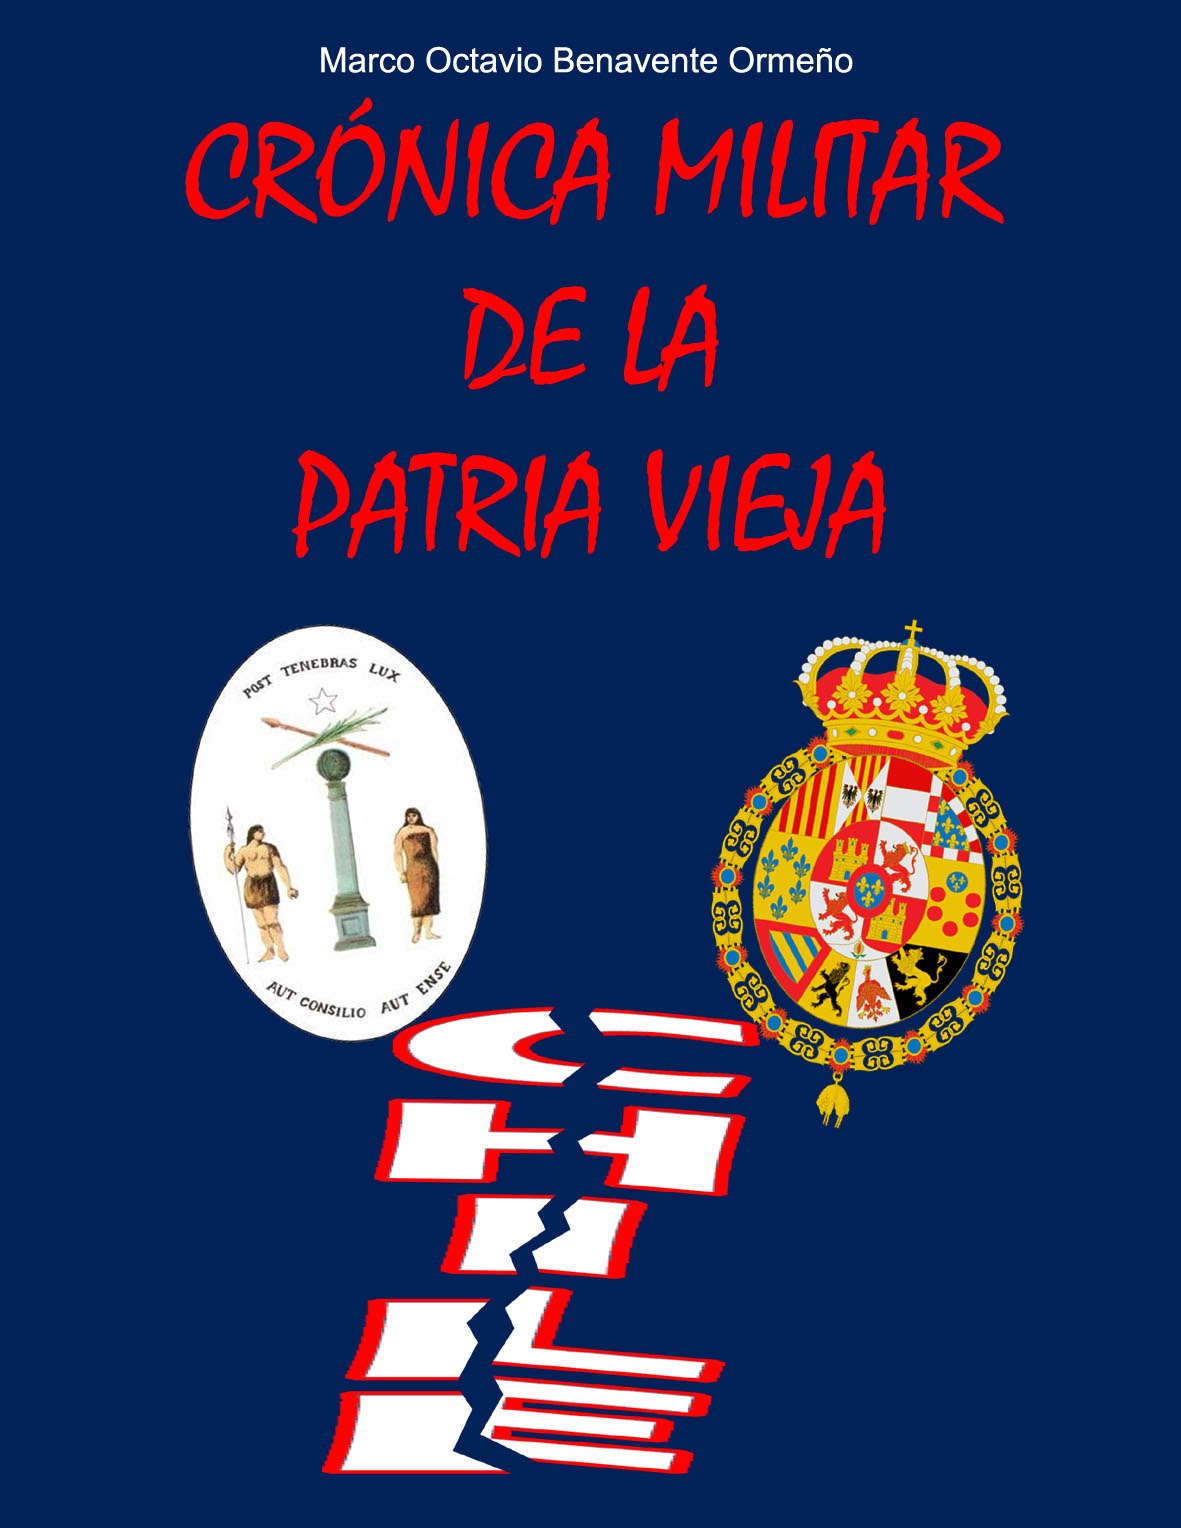 "Crónica Militar de la Patria Vieja"